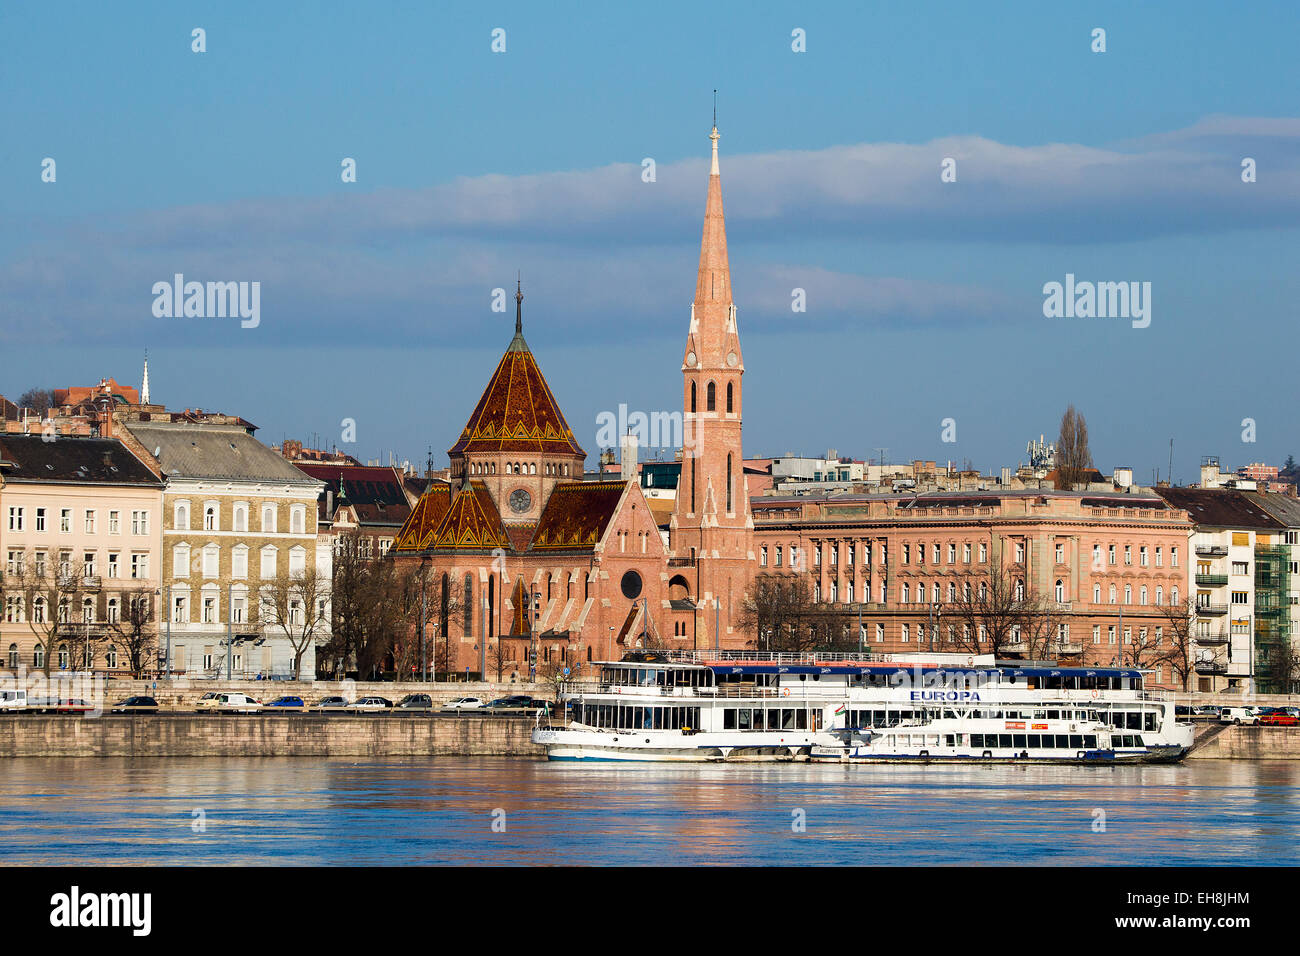 Chiesa calvinista con un fiume Danubio crociera barca in primo piano, Budapest, Ungheria Foto Stock